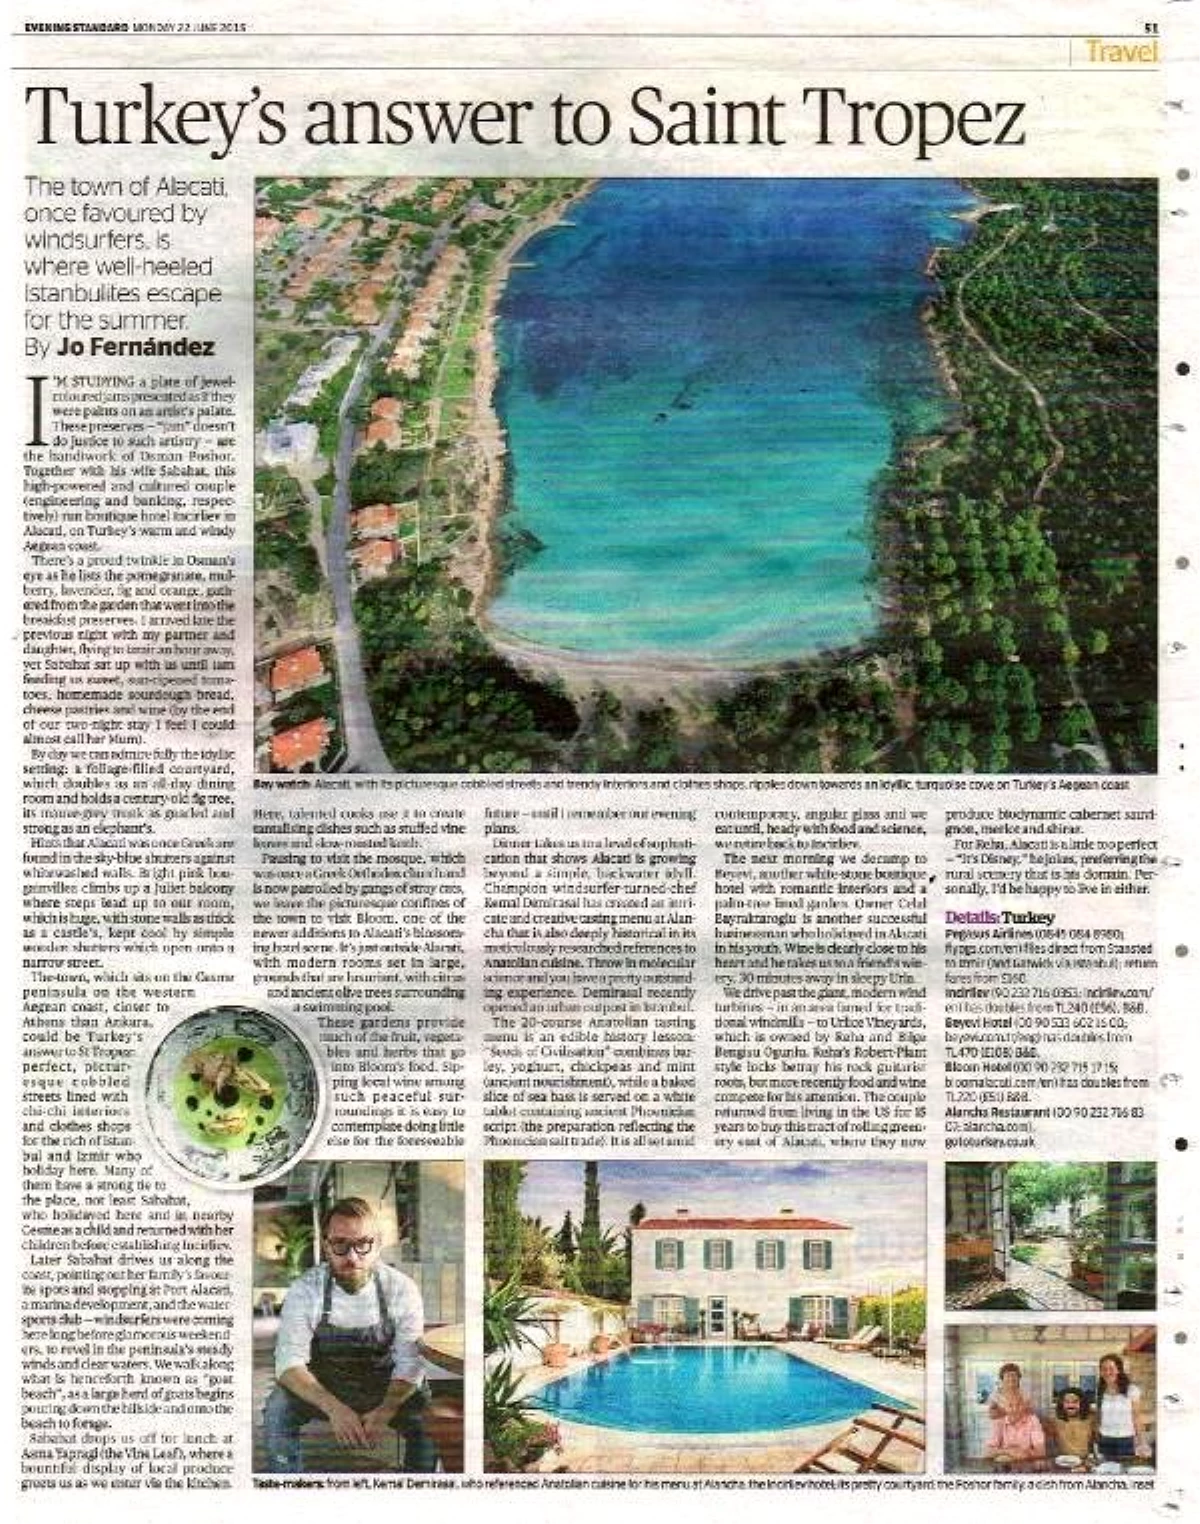 Evening Standard: "Alaçatı Türkiye\'nin Saint Tropez\'i"